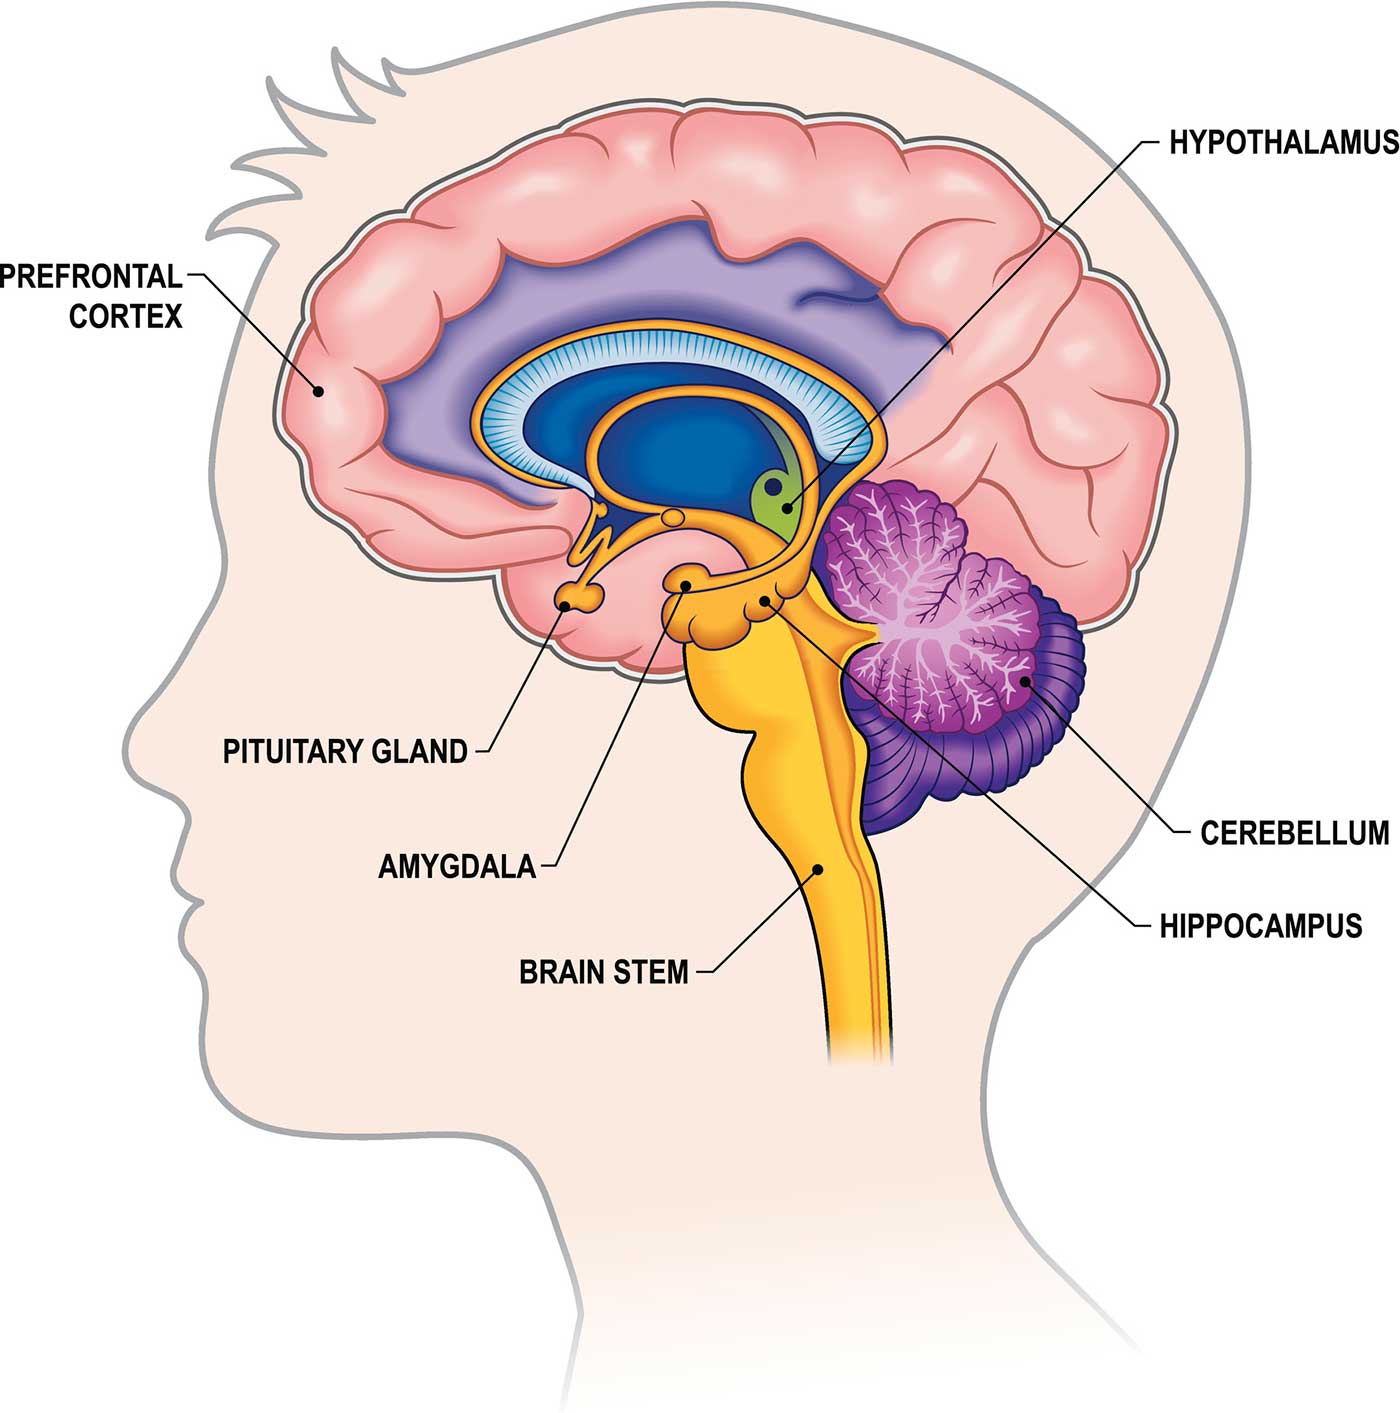 عکس بخش های مختلف مغز انسان همراه با توضیحات